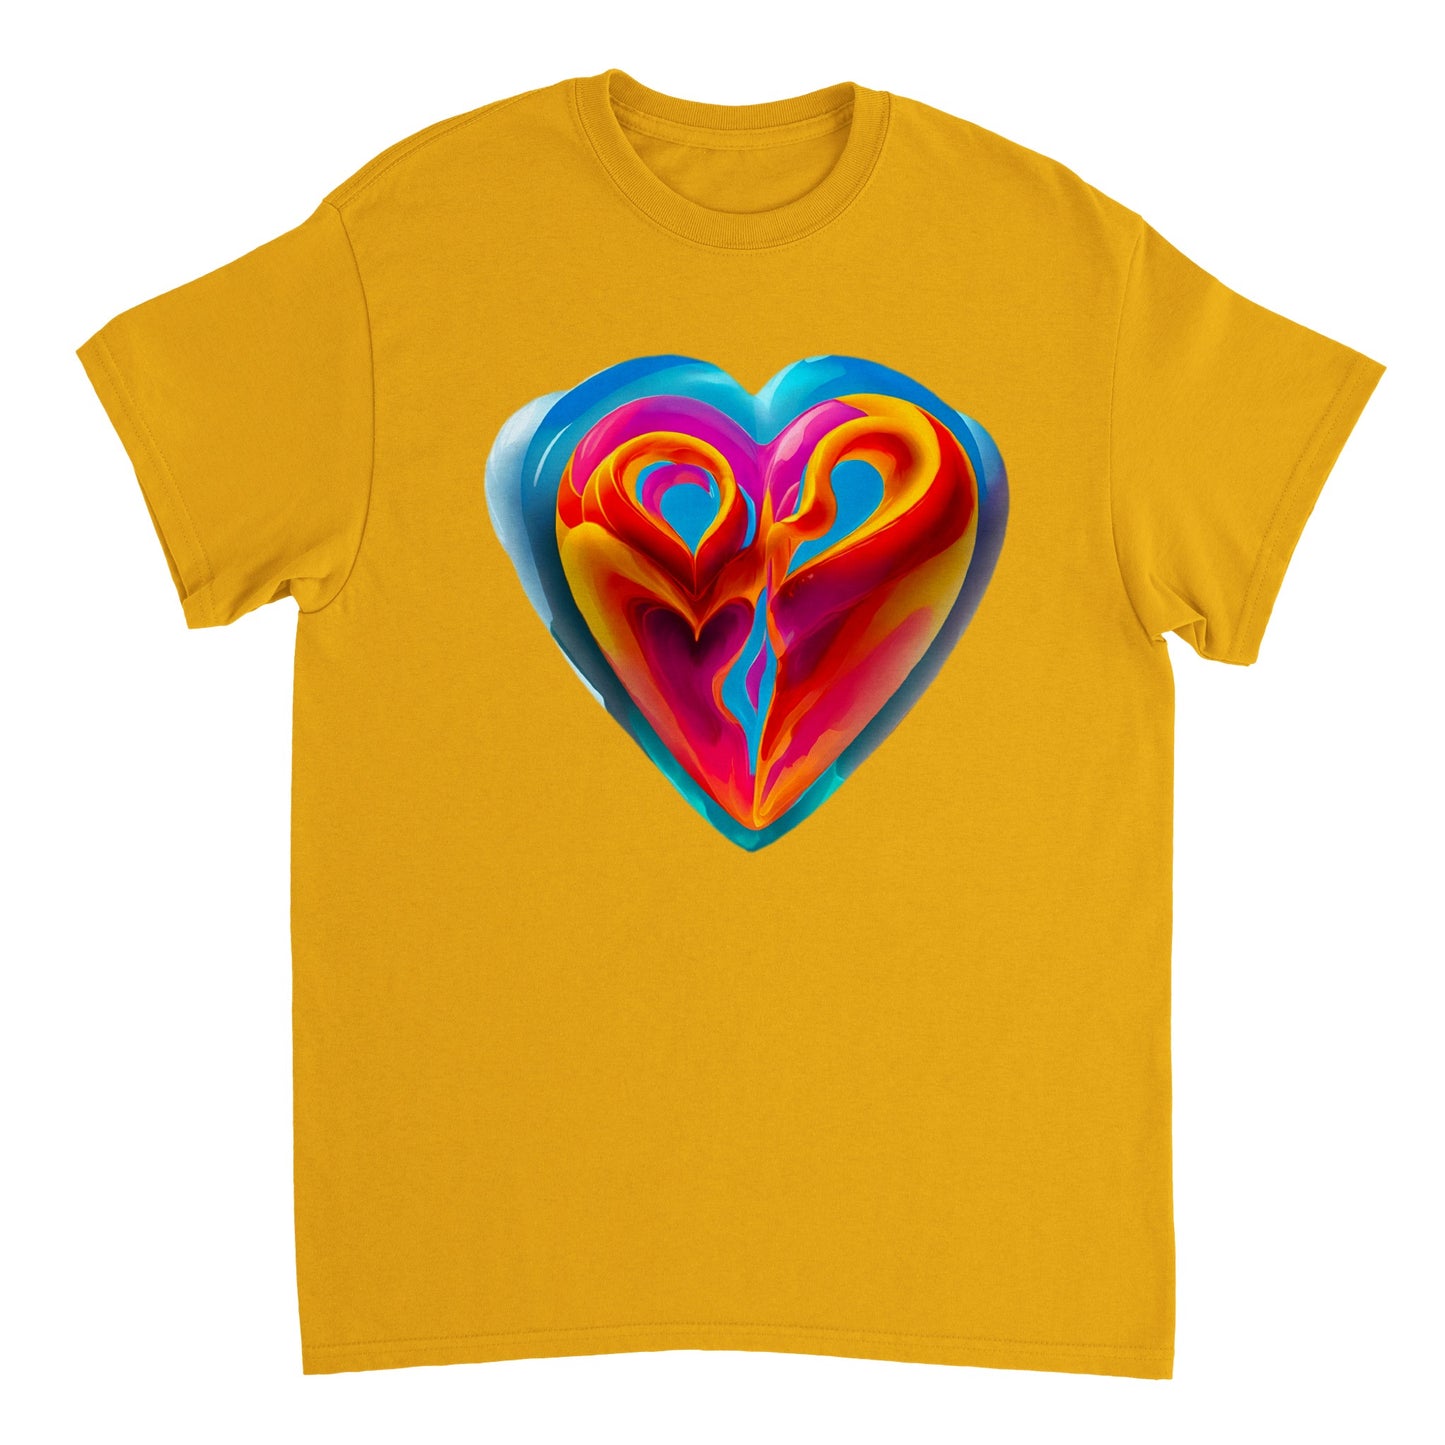 Love Heart - Heavyweight Unisex Crewneck T-shirt 112